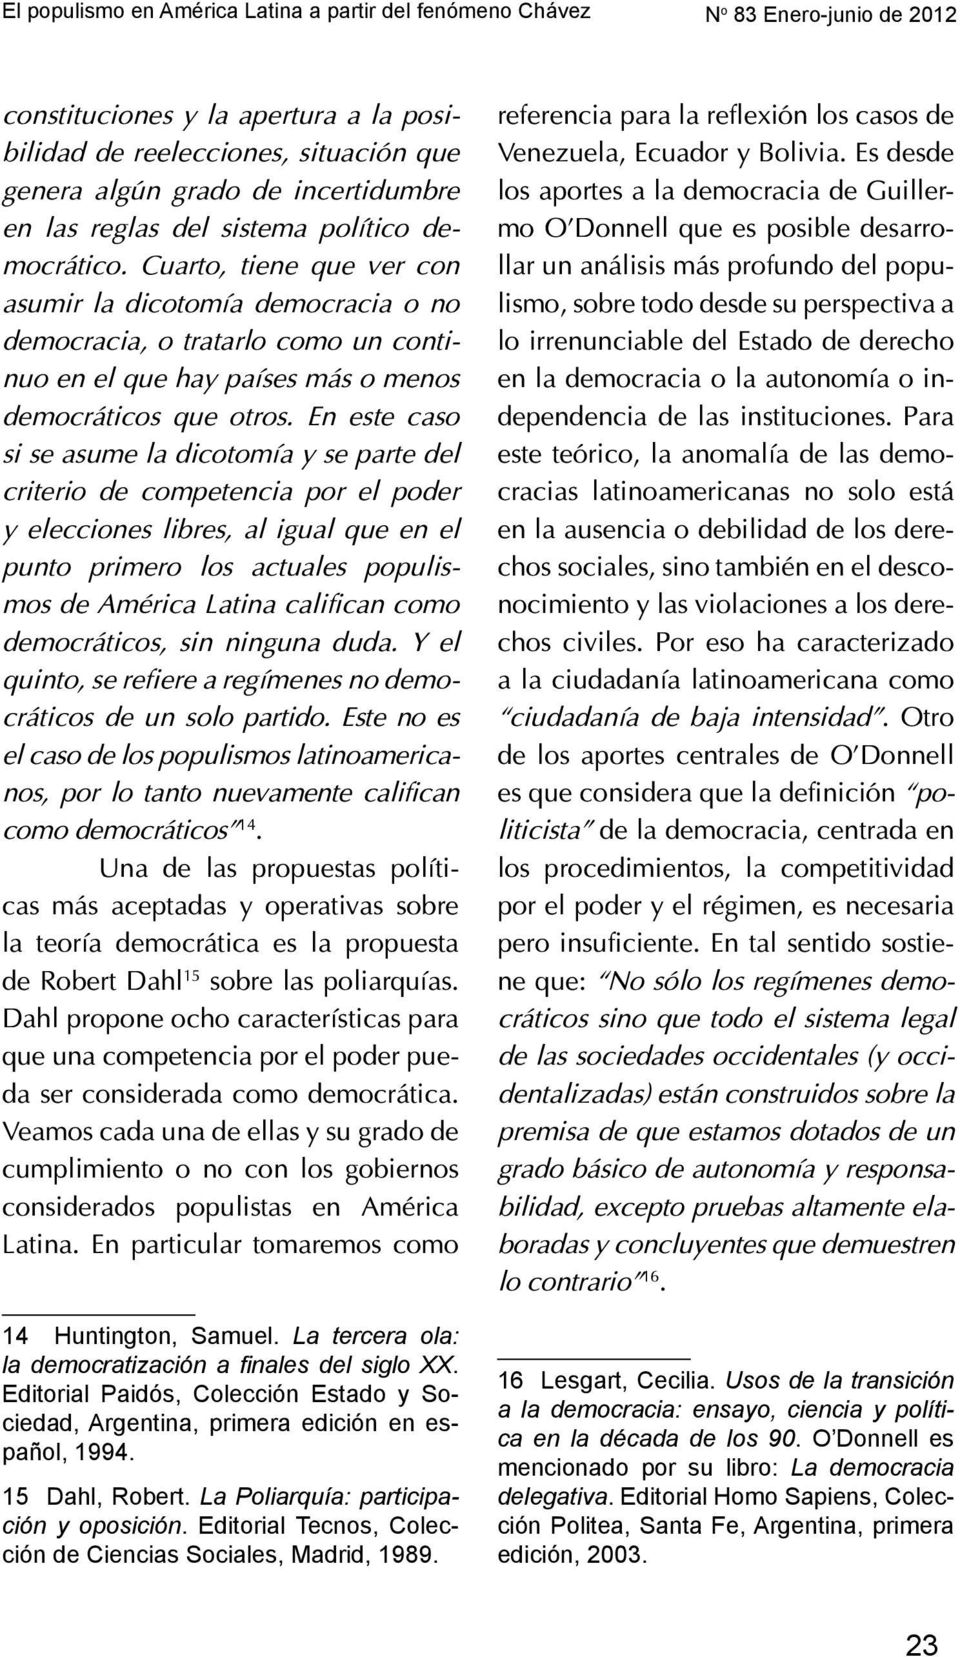 La Poliarquía: participación y oposición. Editorial Tecnos, Colección de Ciencias Sociales, Madrid, 1989. 16 Lesgart, Cecilia.